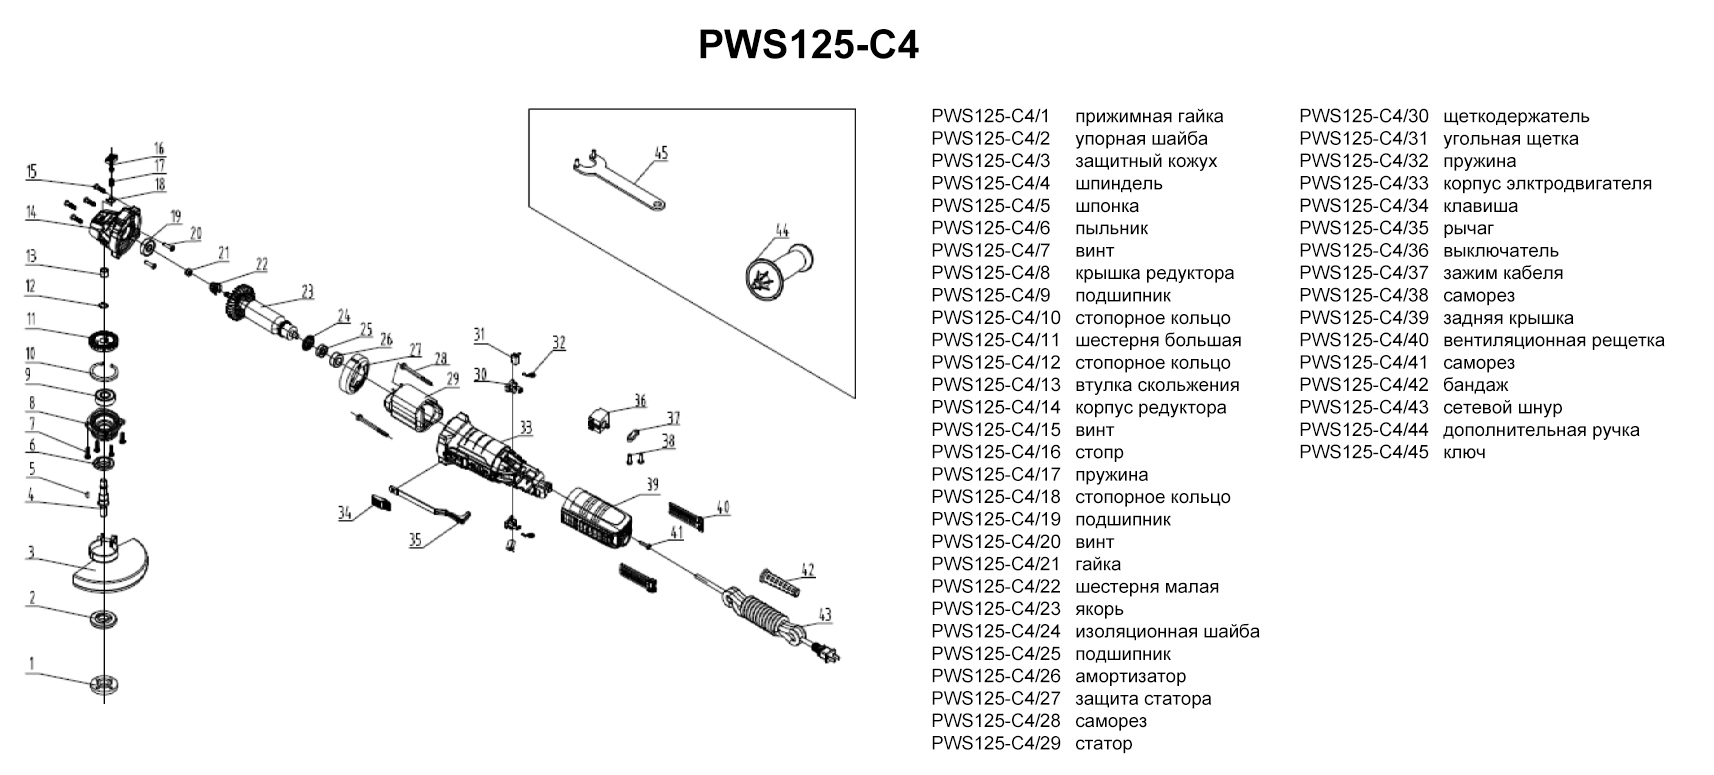 Запчасти, схема и деталировка УШМ P.I.T. PWS125-C4